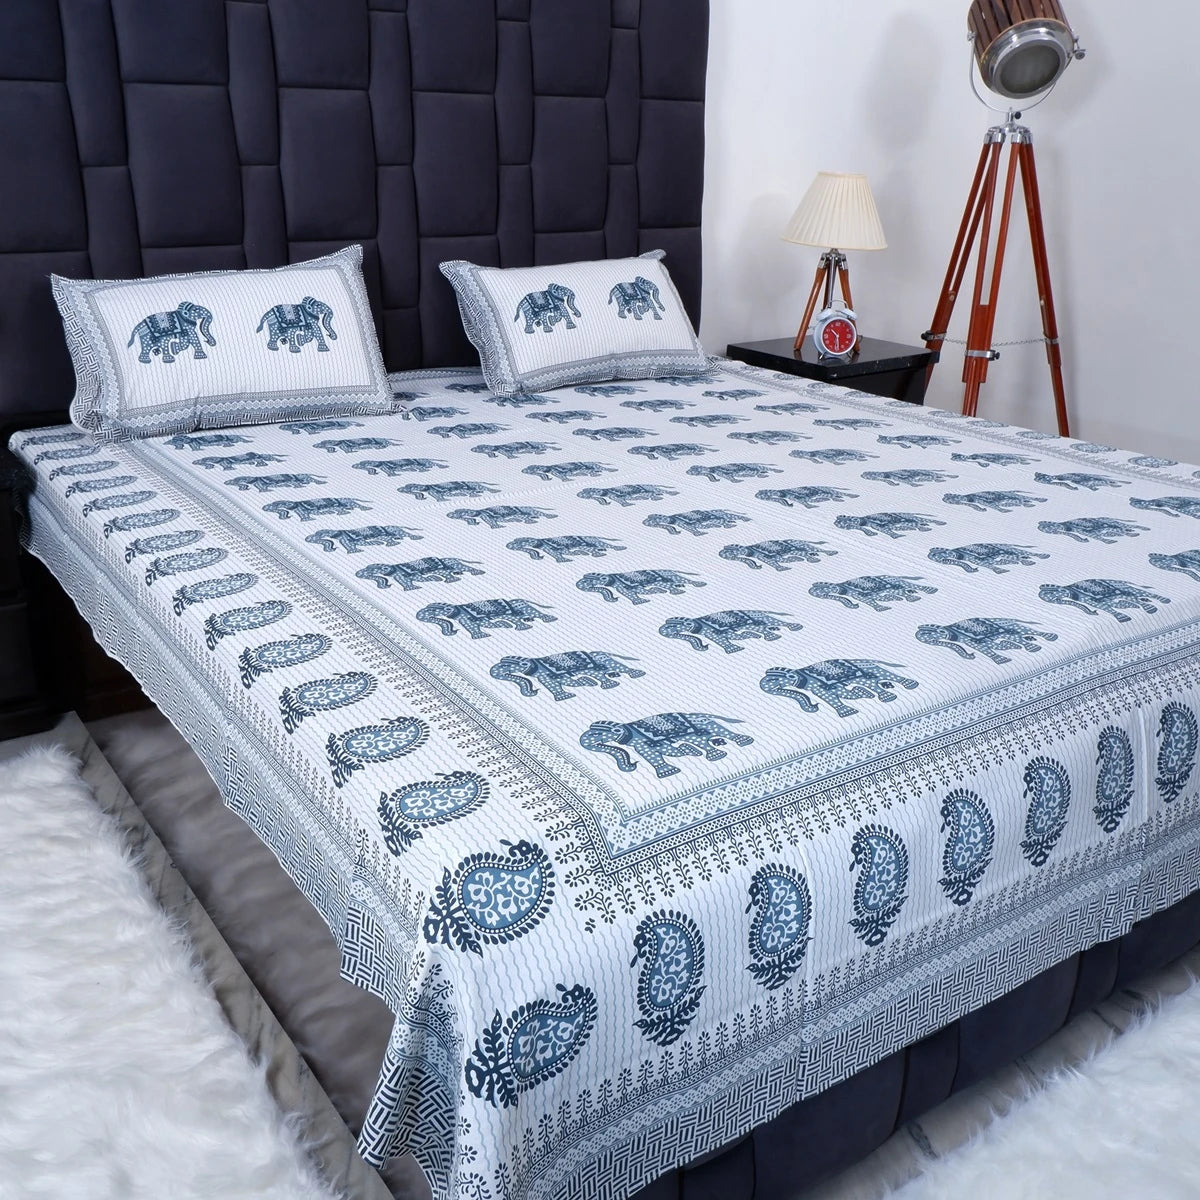 100% Pure Cotton Bed Sheet | Elegant Jaipuri Print Bed Sheet